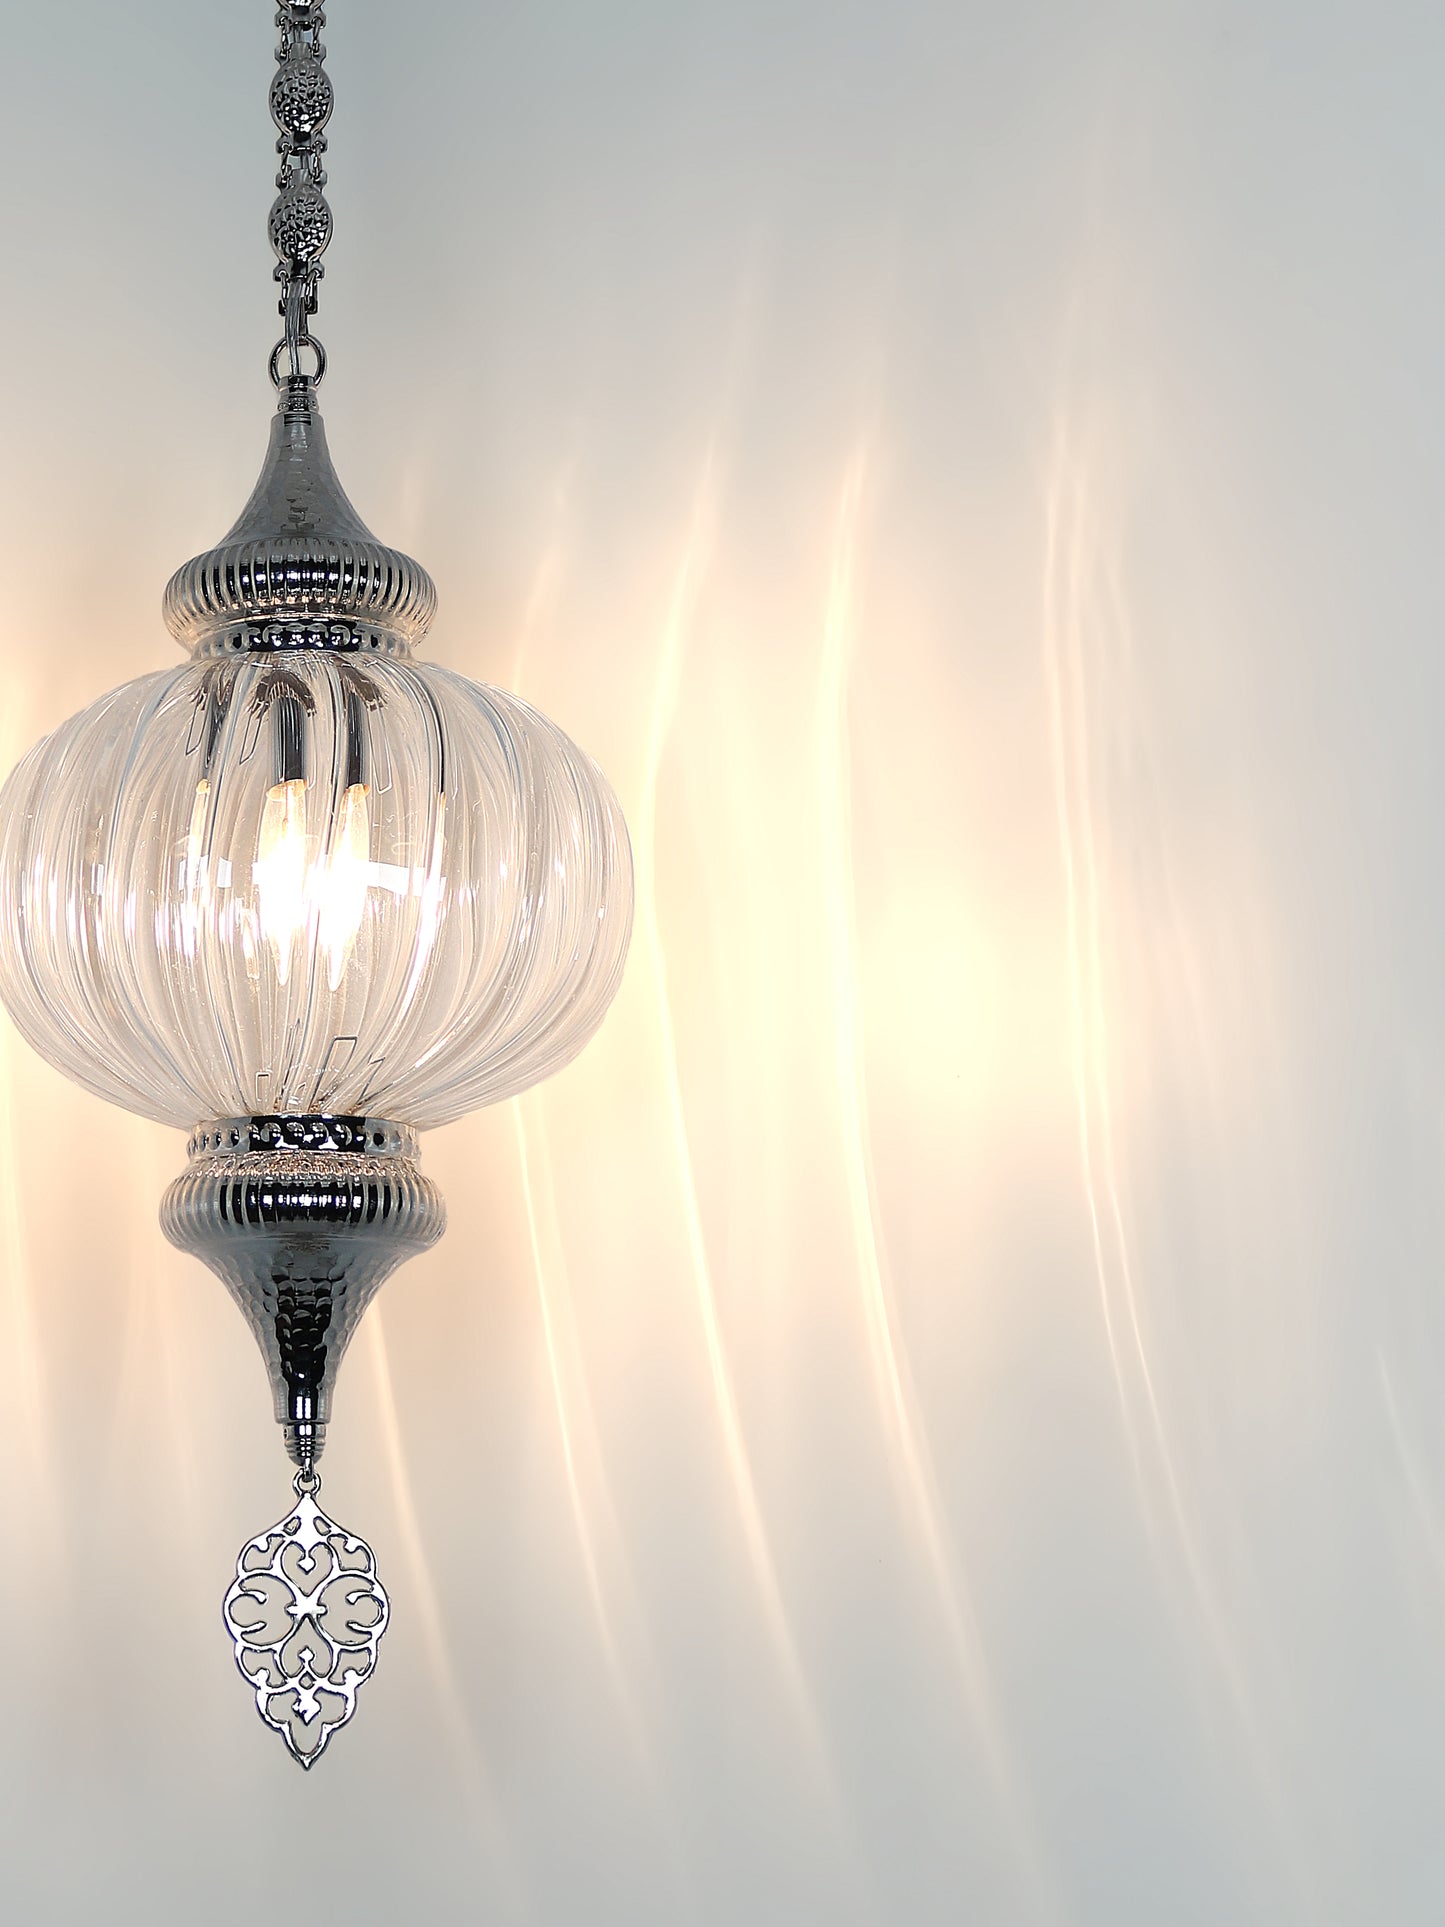 Pyrex Blown Clear Glass Lantern Lamp